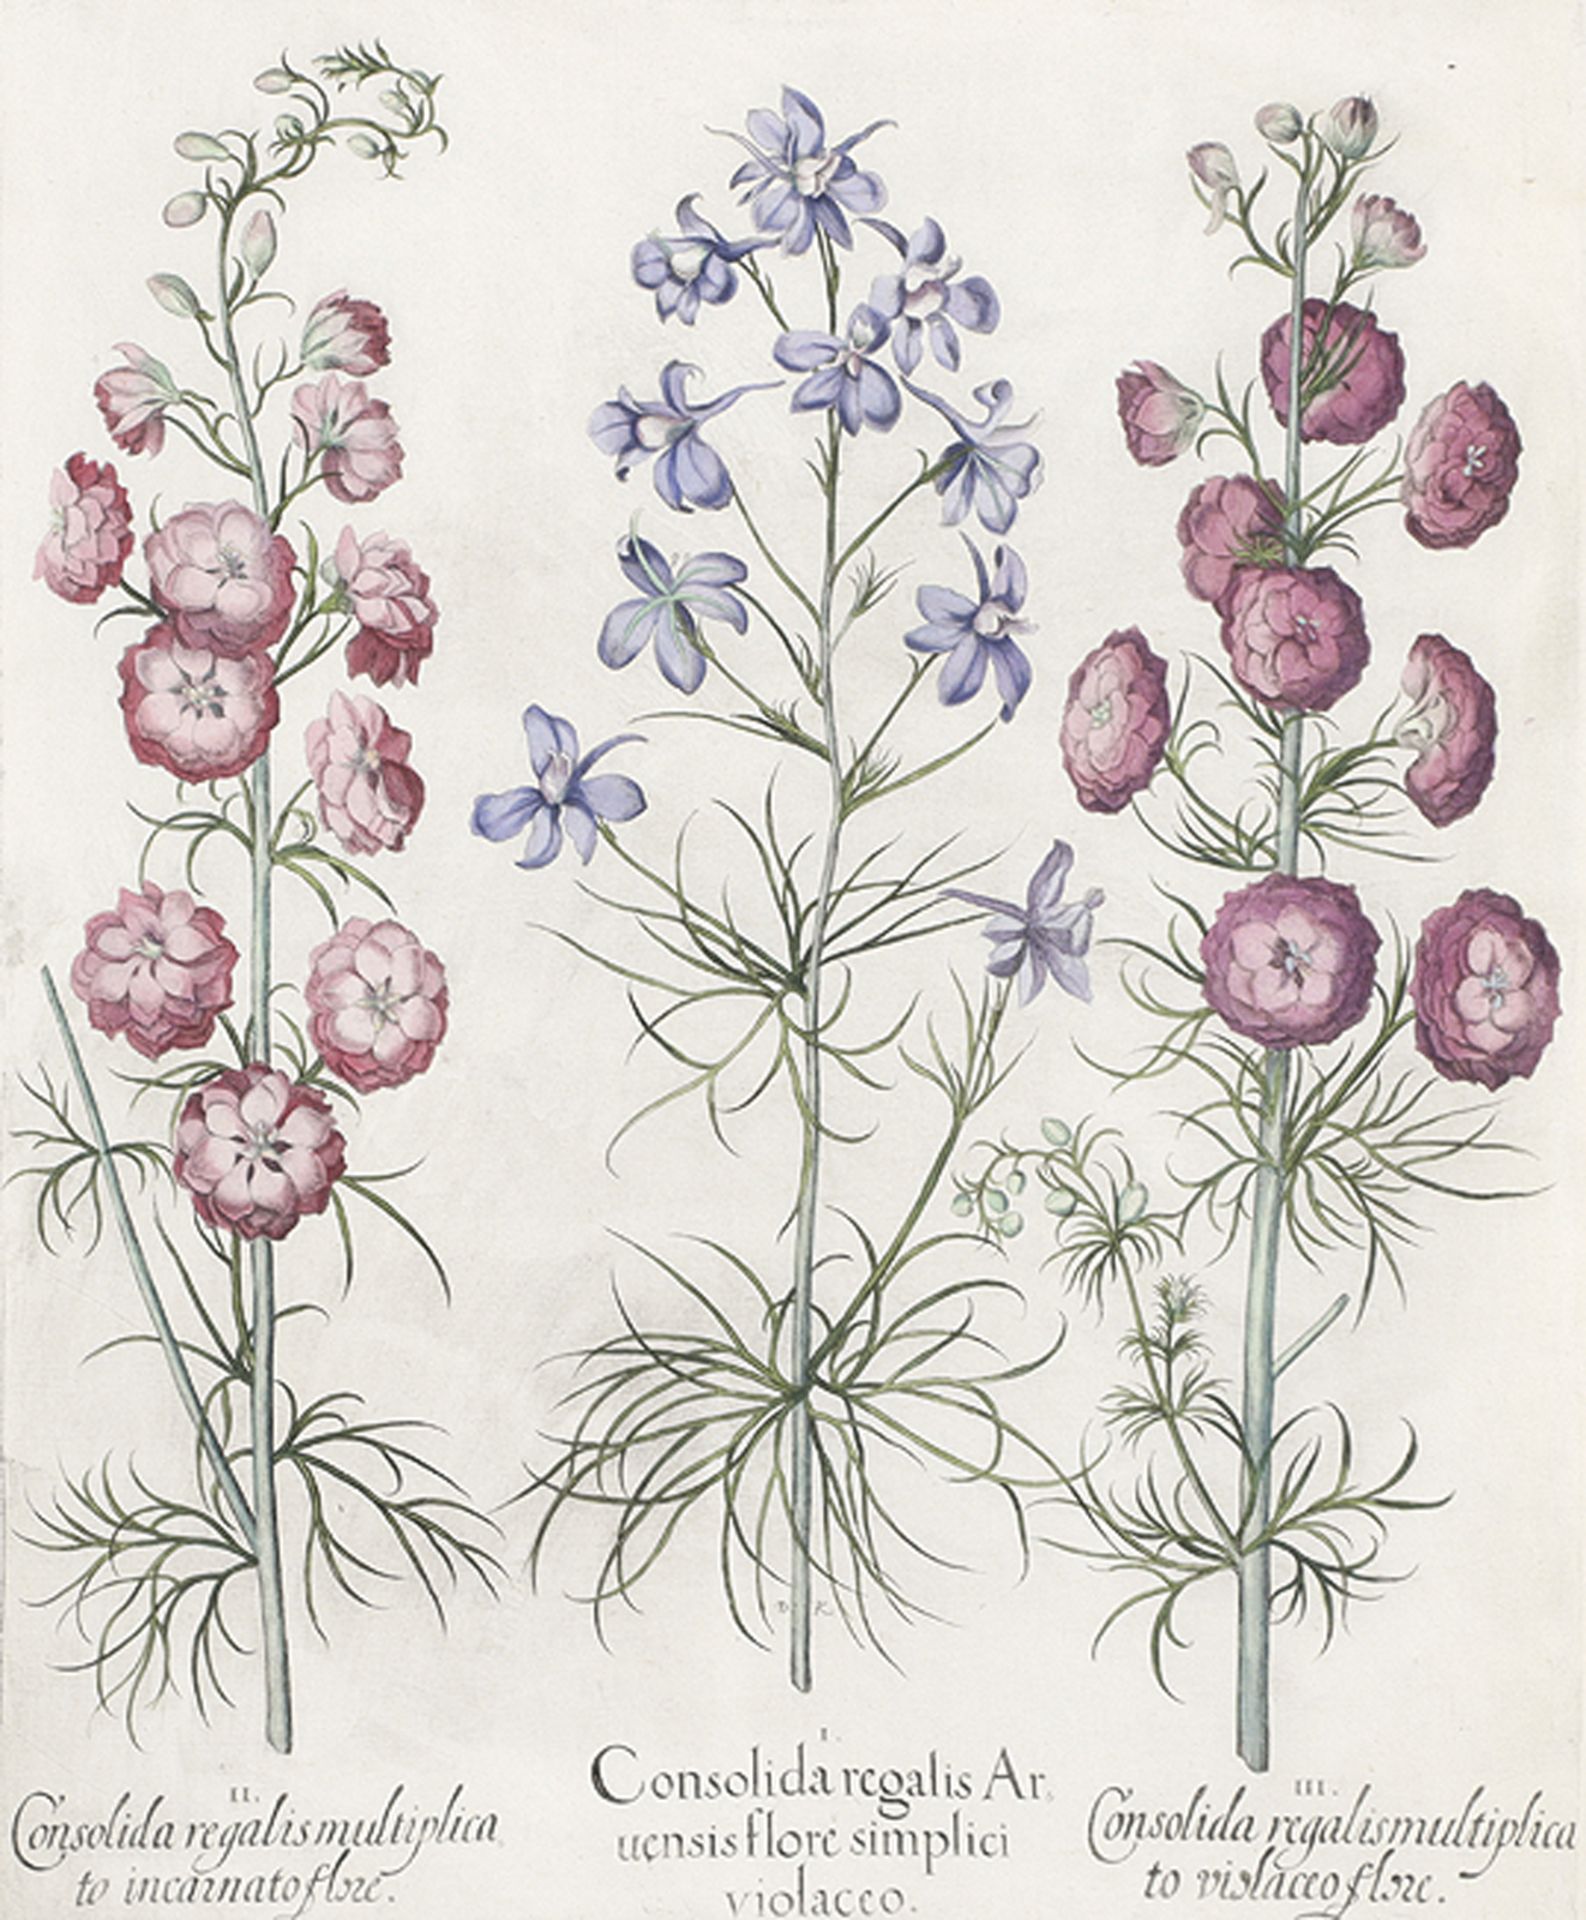 BOTANIK: Consolida regalis Aruensis flore simplici violaveo; Consolida regalis multiplicato incarna